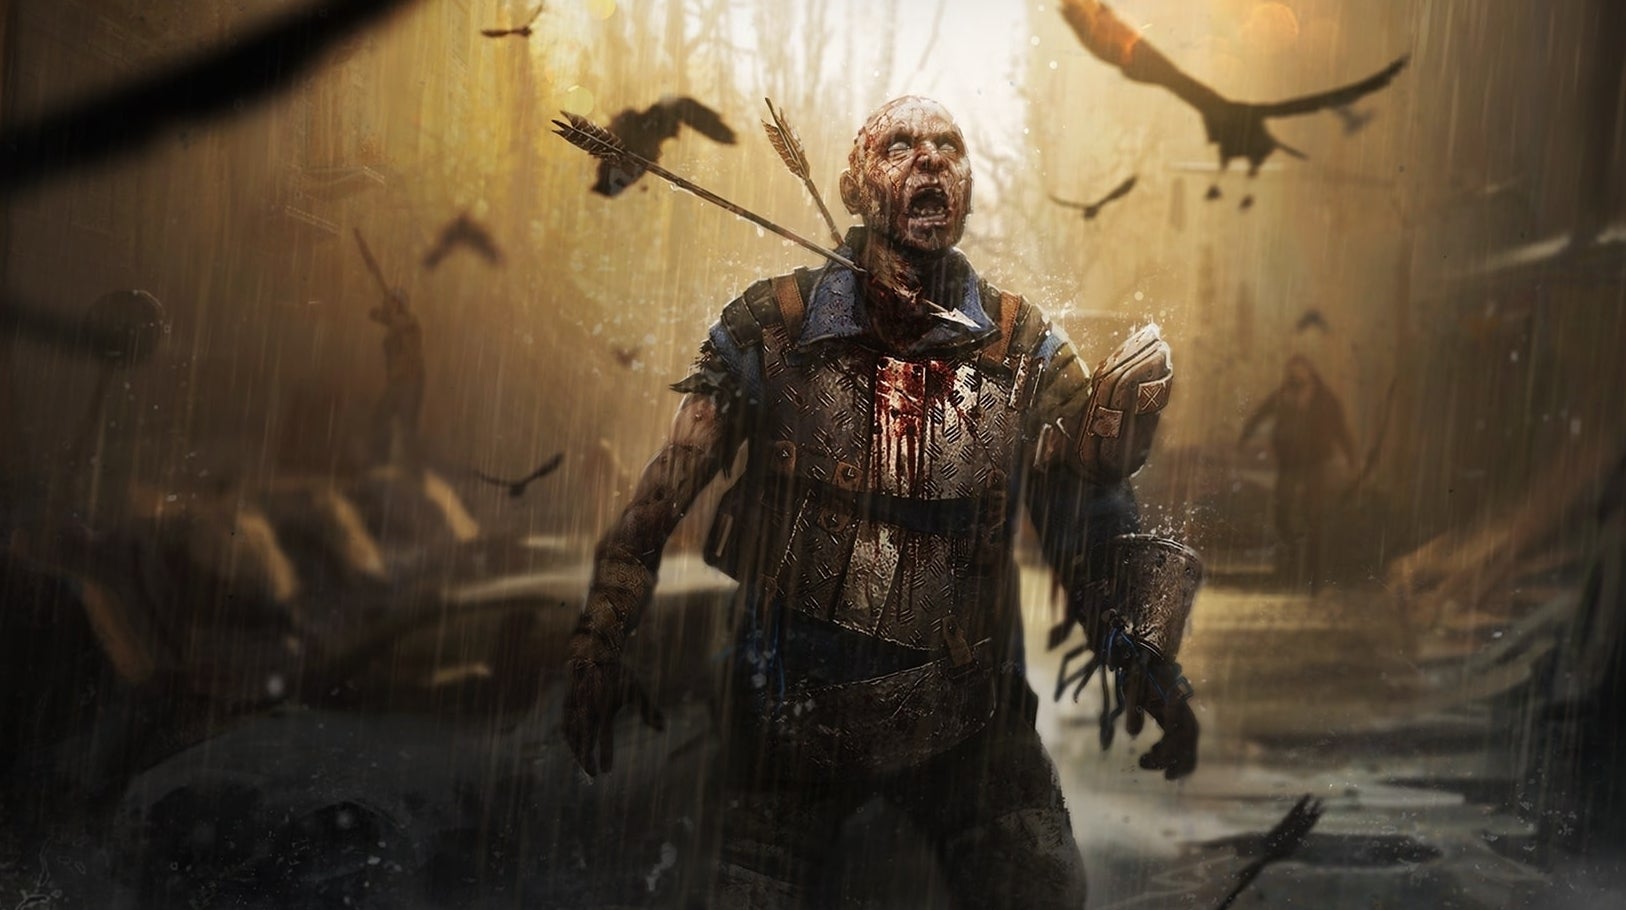 Immagine di E3 2019: acrobazie e zombie si mostrano nel nuovo video di gameplay di Dying Light 2